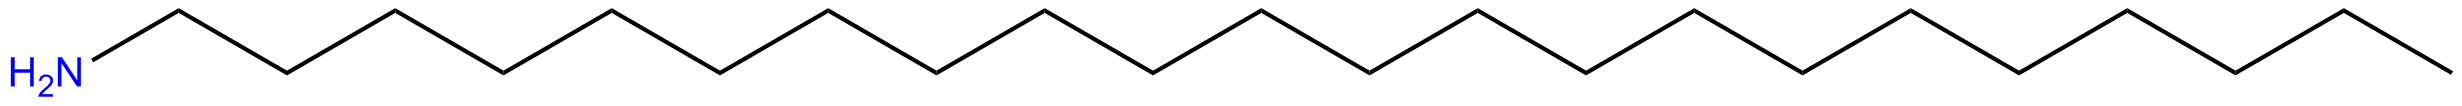 Image of 1-docosanamine